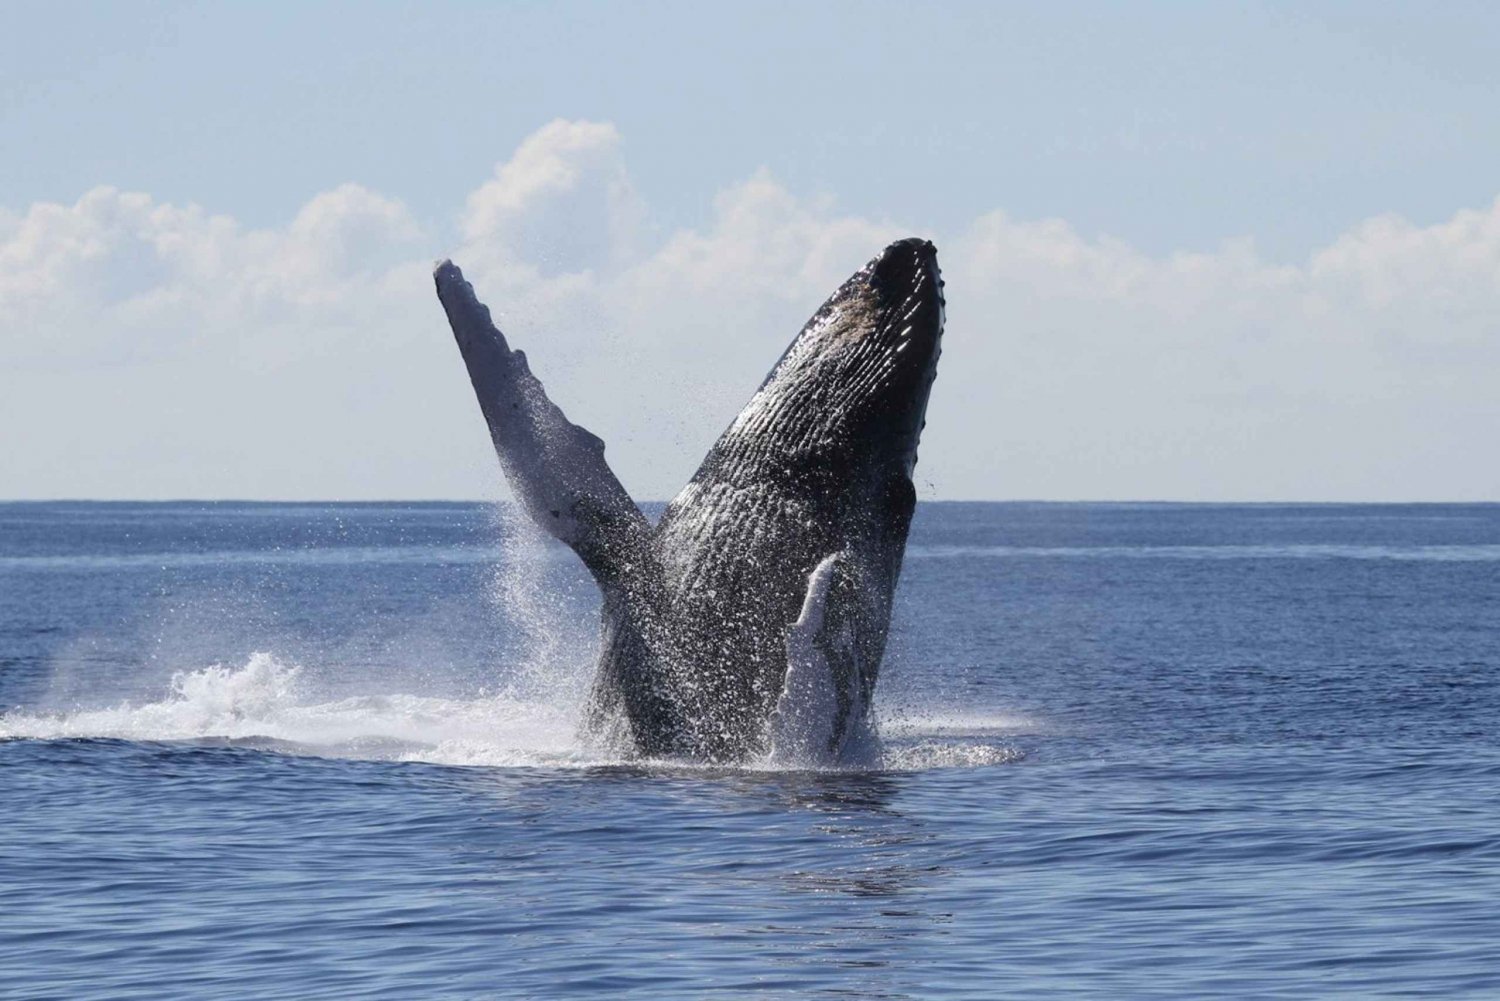 Oahu: Seasonal Whale Watch Cruise